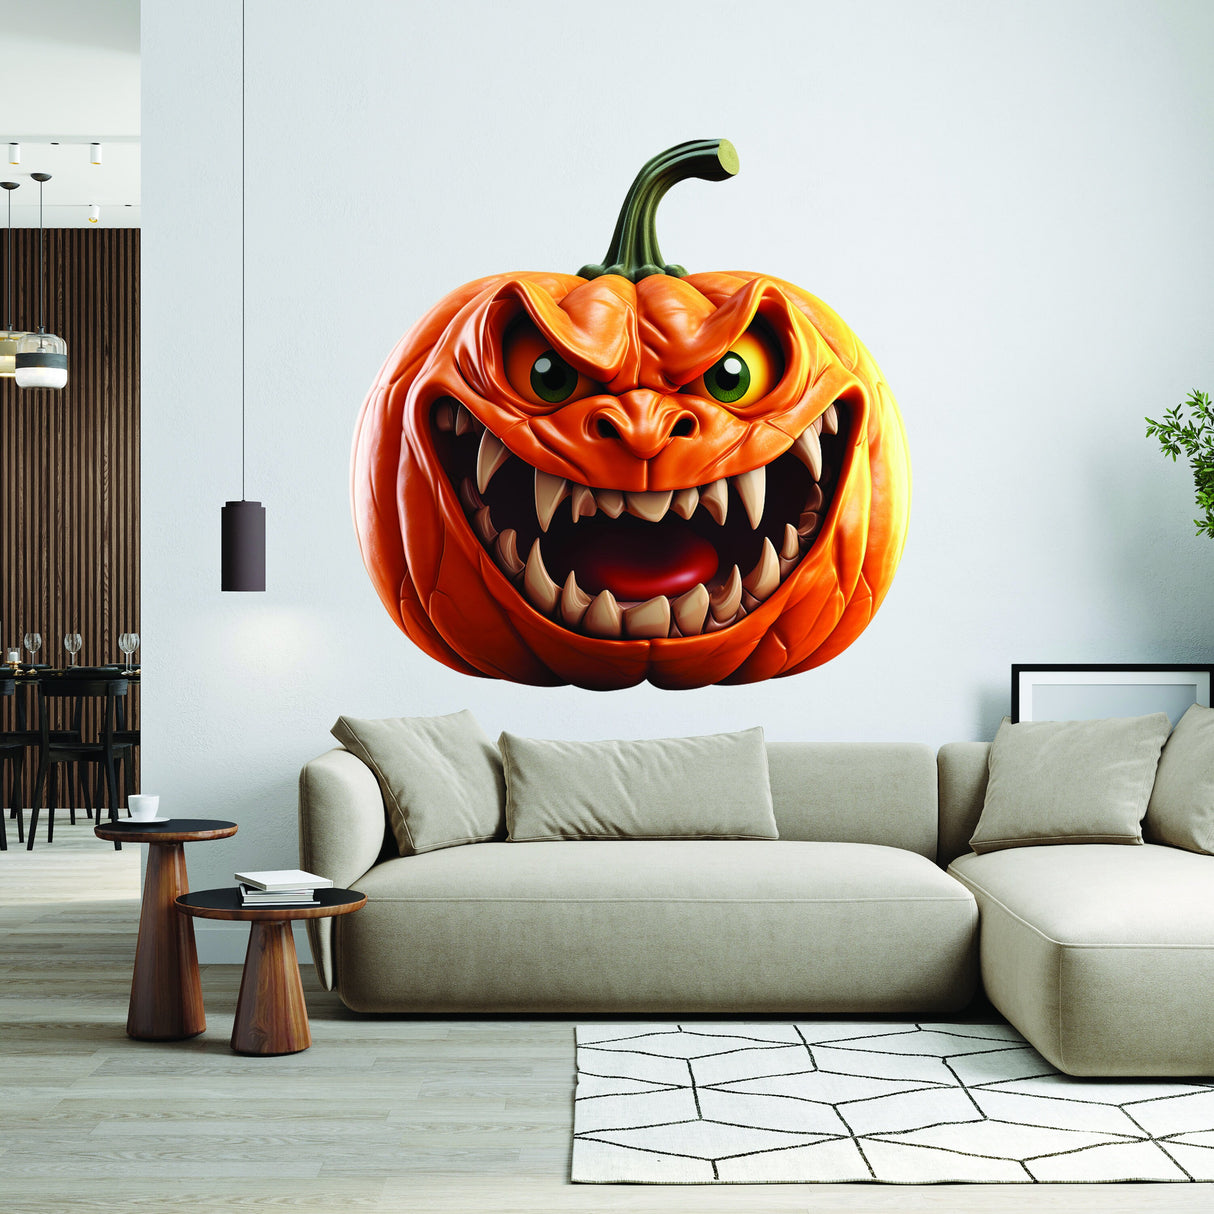 3D Evil Laughing Pumpkin Decal - Halloween Scary Vinyl Wall Sticker